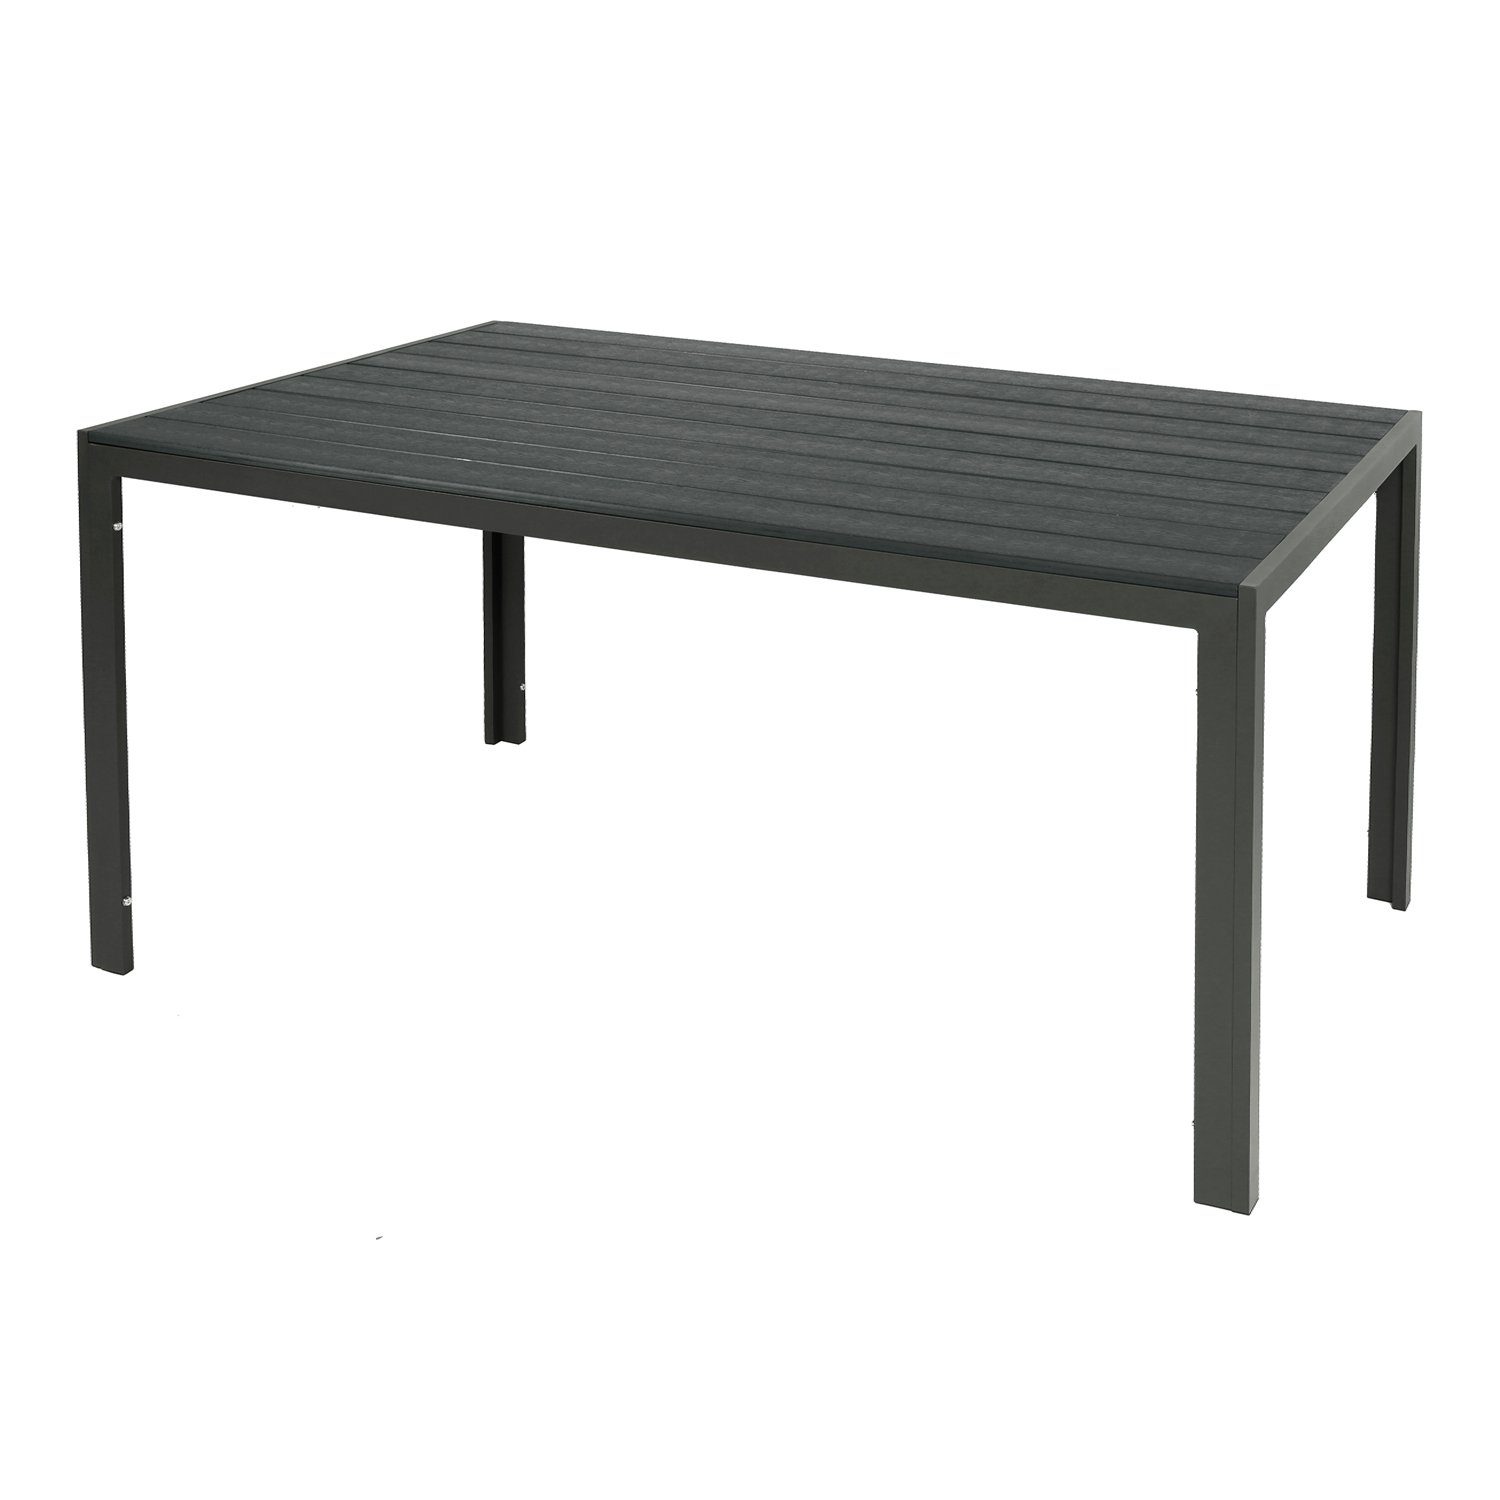 INDA-Exclusiv Küchentisch Alu Non-Wood Gartentisch Tisch Esstisch Gartenmöbel L150/160/180cm